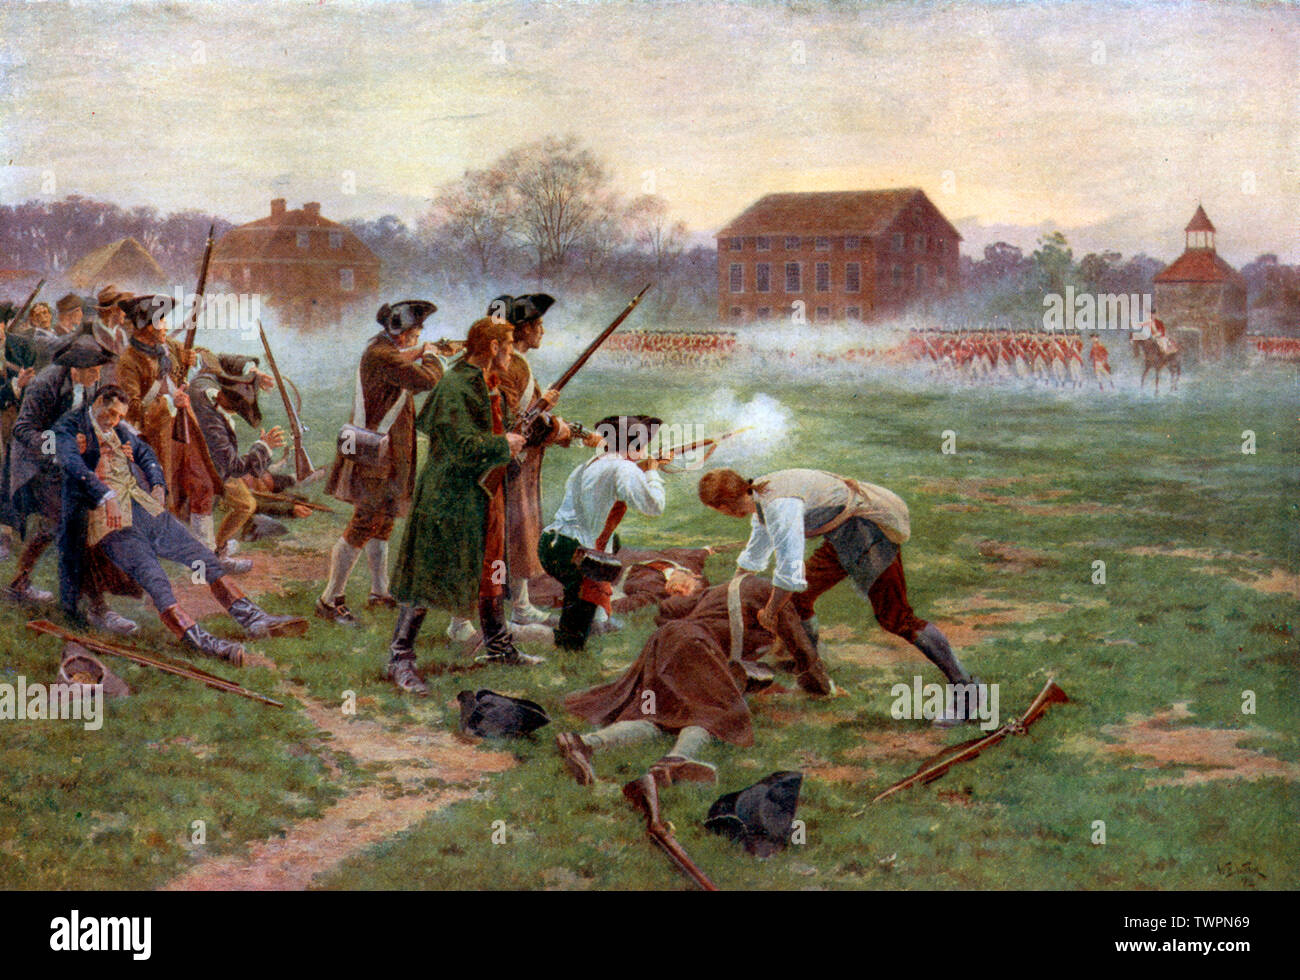 'Le premier combat pour l'indépendance, Lexington Common, 19 avril 1775' (1910). Par William Barnes Wollen (1857-1936). Les batailles de Lexington et Concord ont été les premiers engagements militaires de la guerre révolutionnaire américaine. Banque D'Images